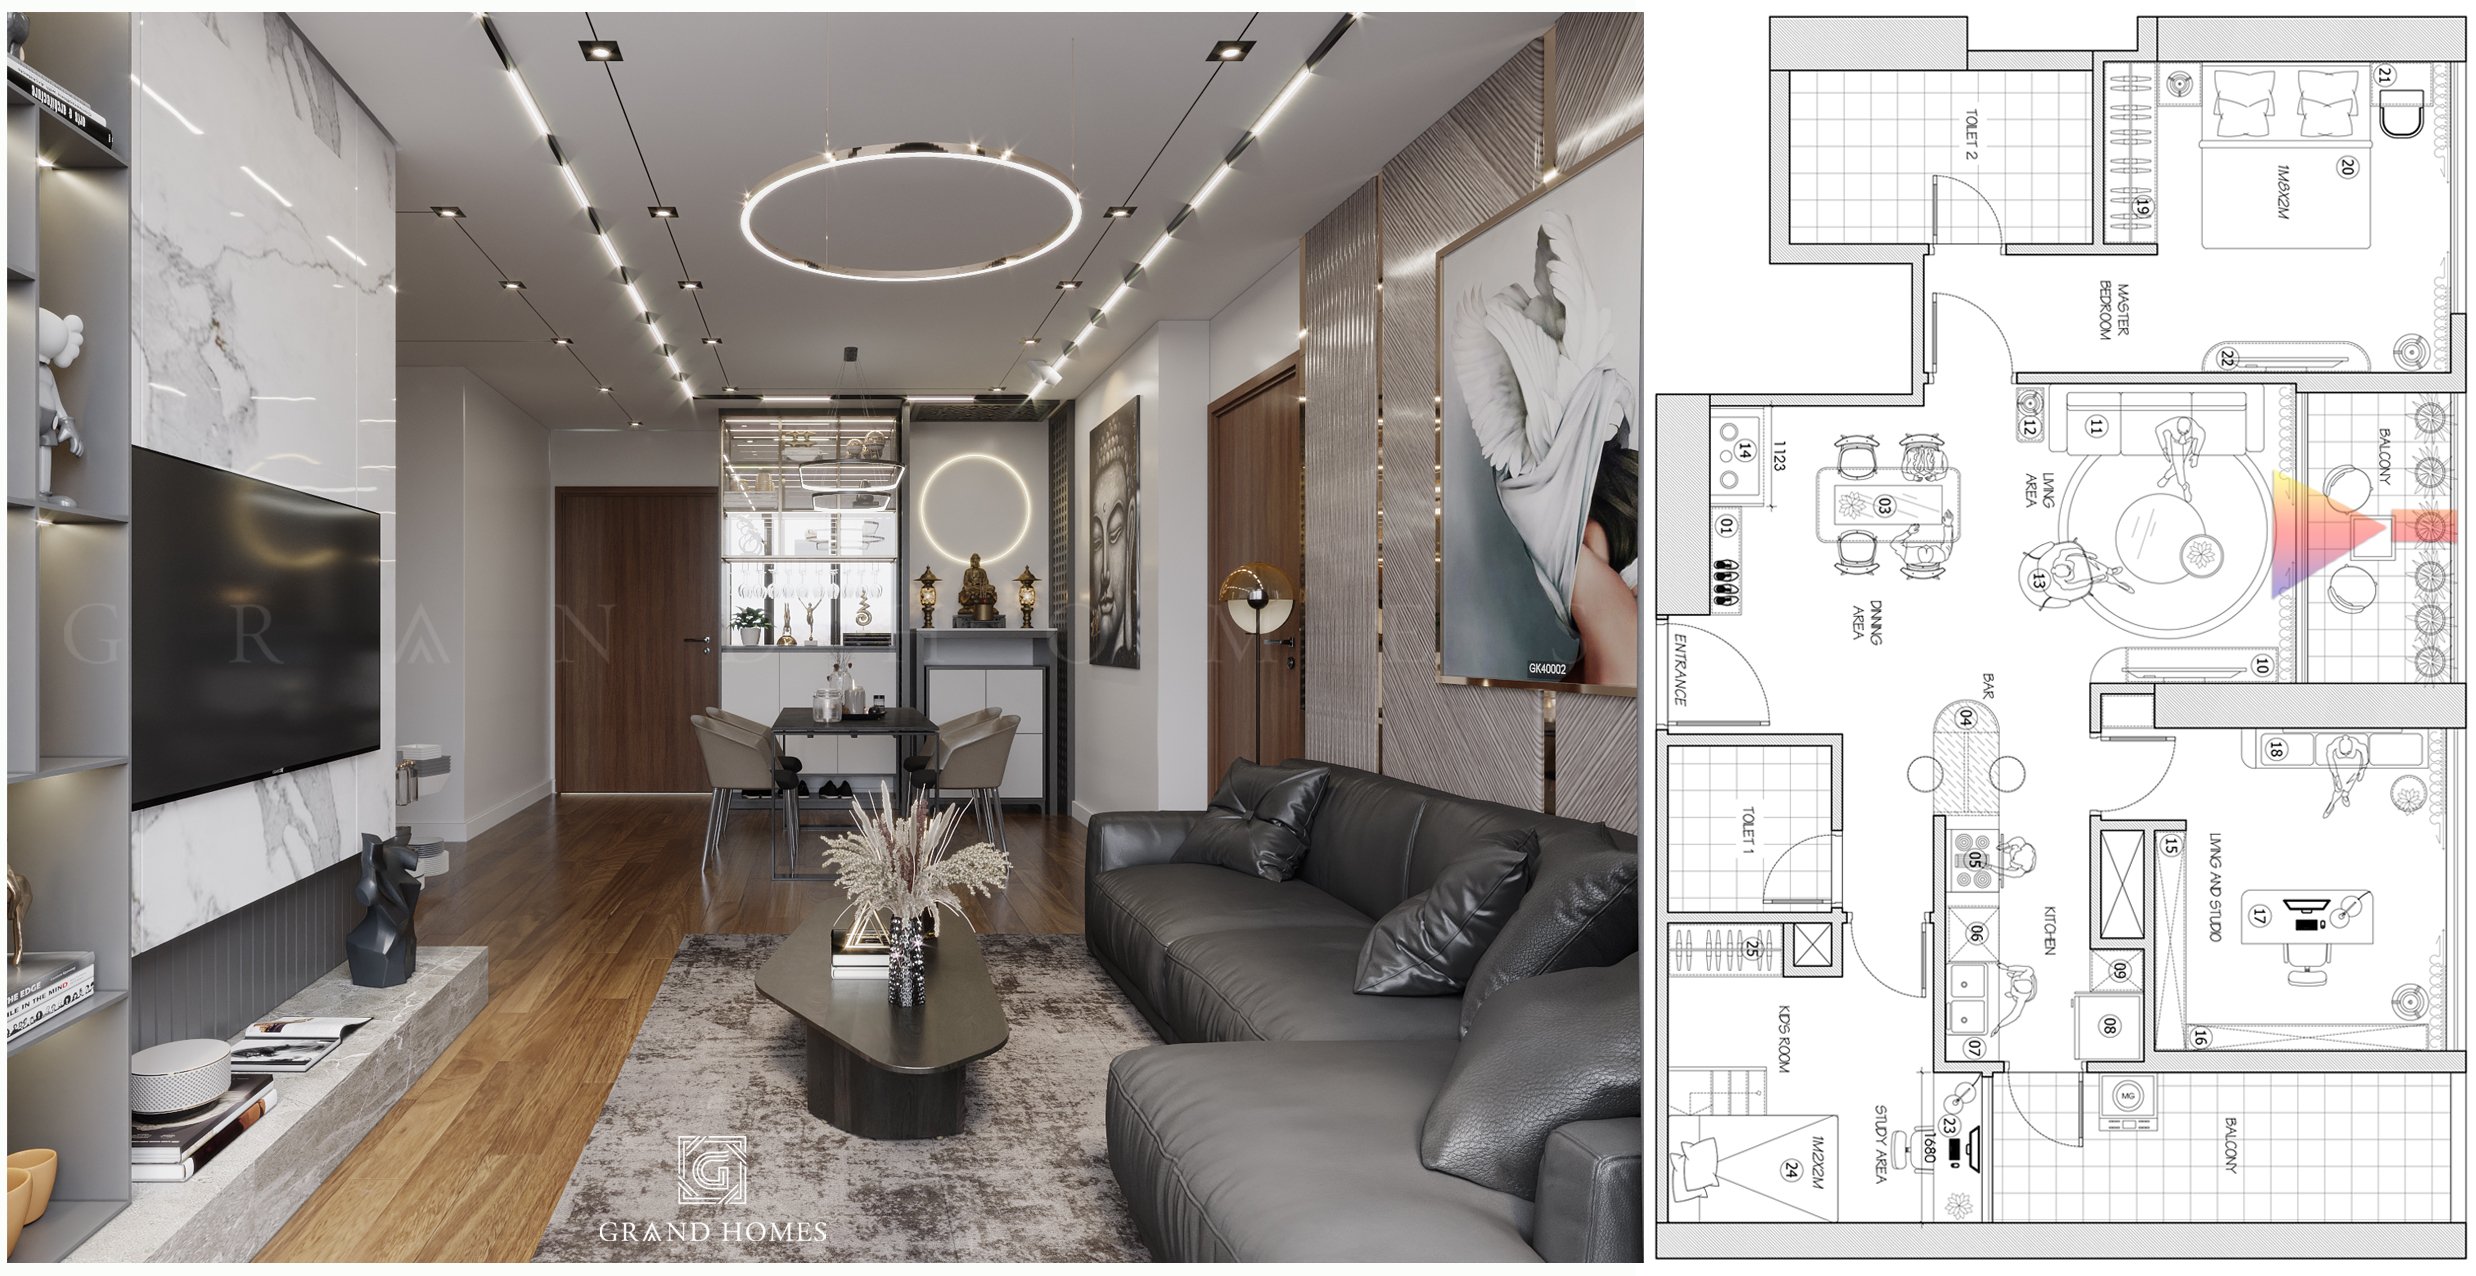 Thiết kế nội thất phải phù hợp với không gian và nhu cầu của gia chủ